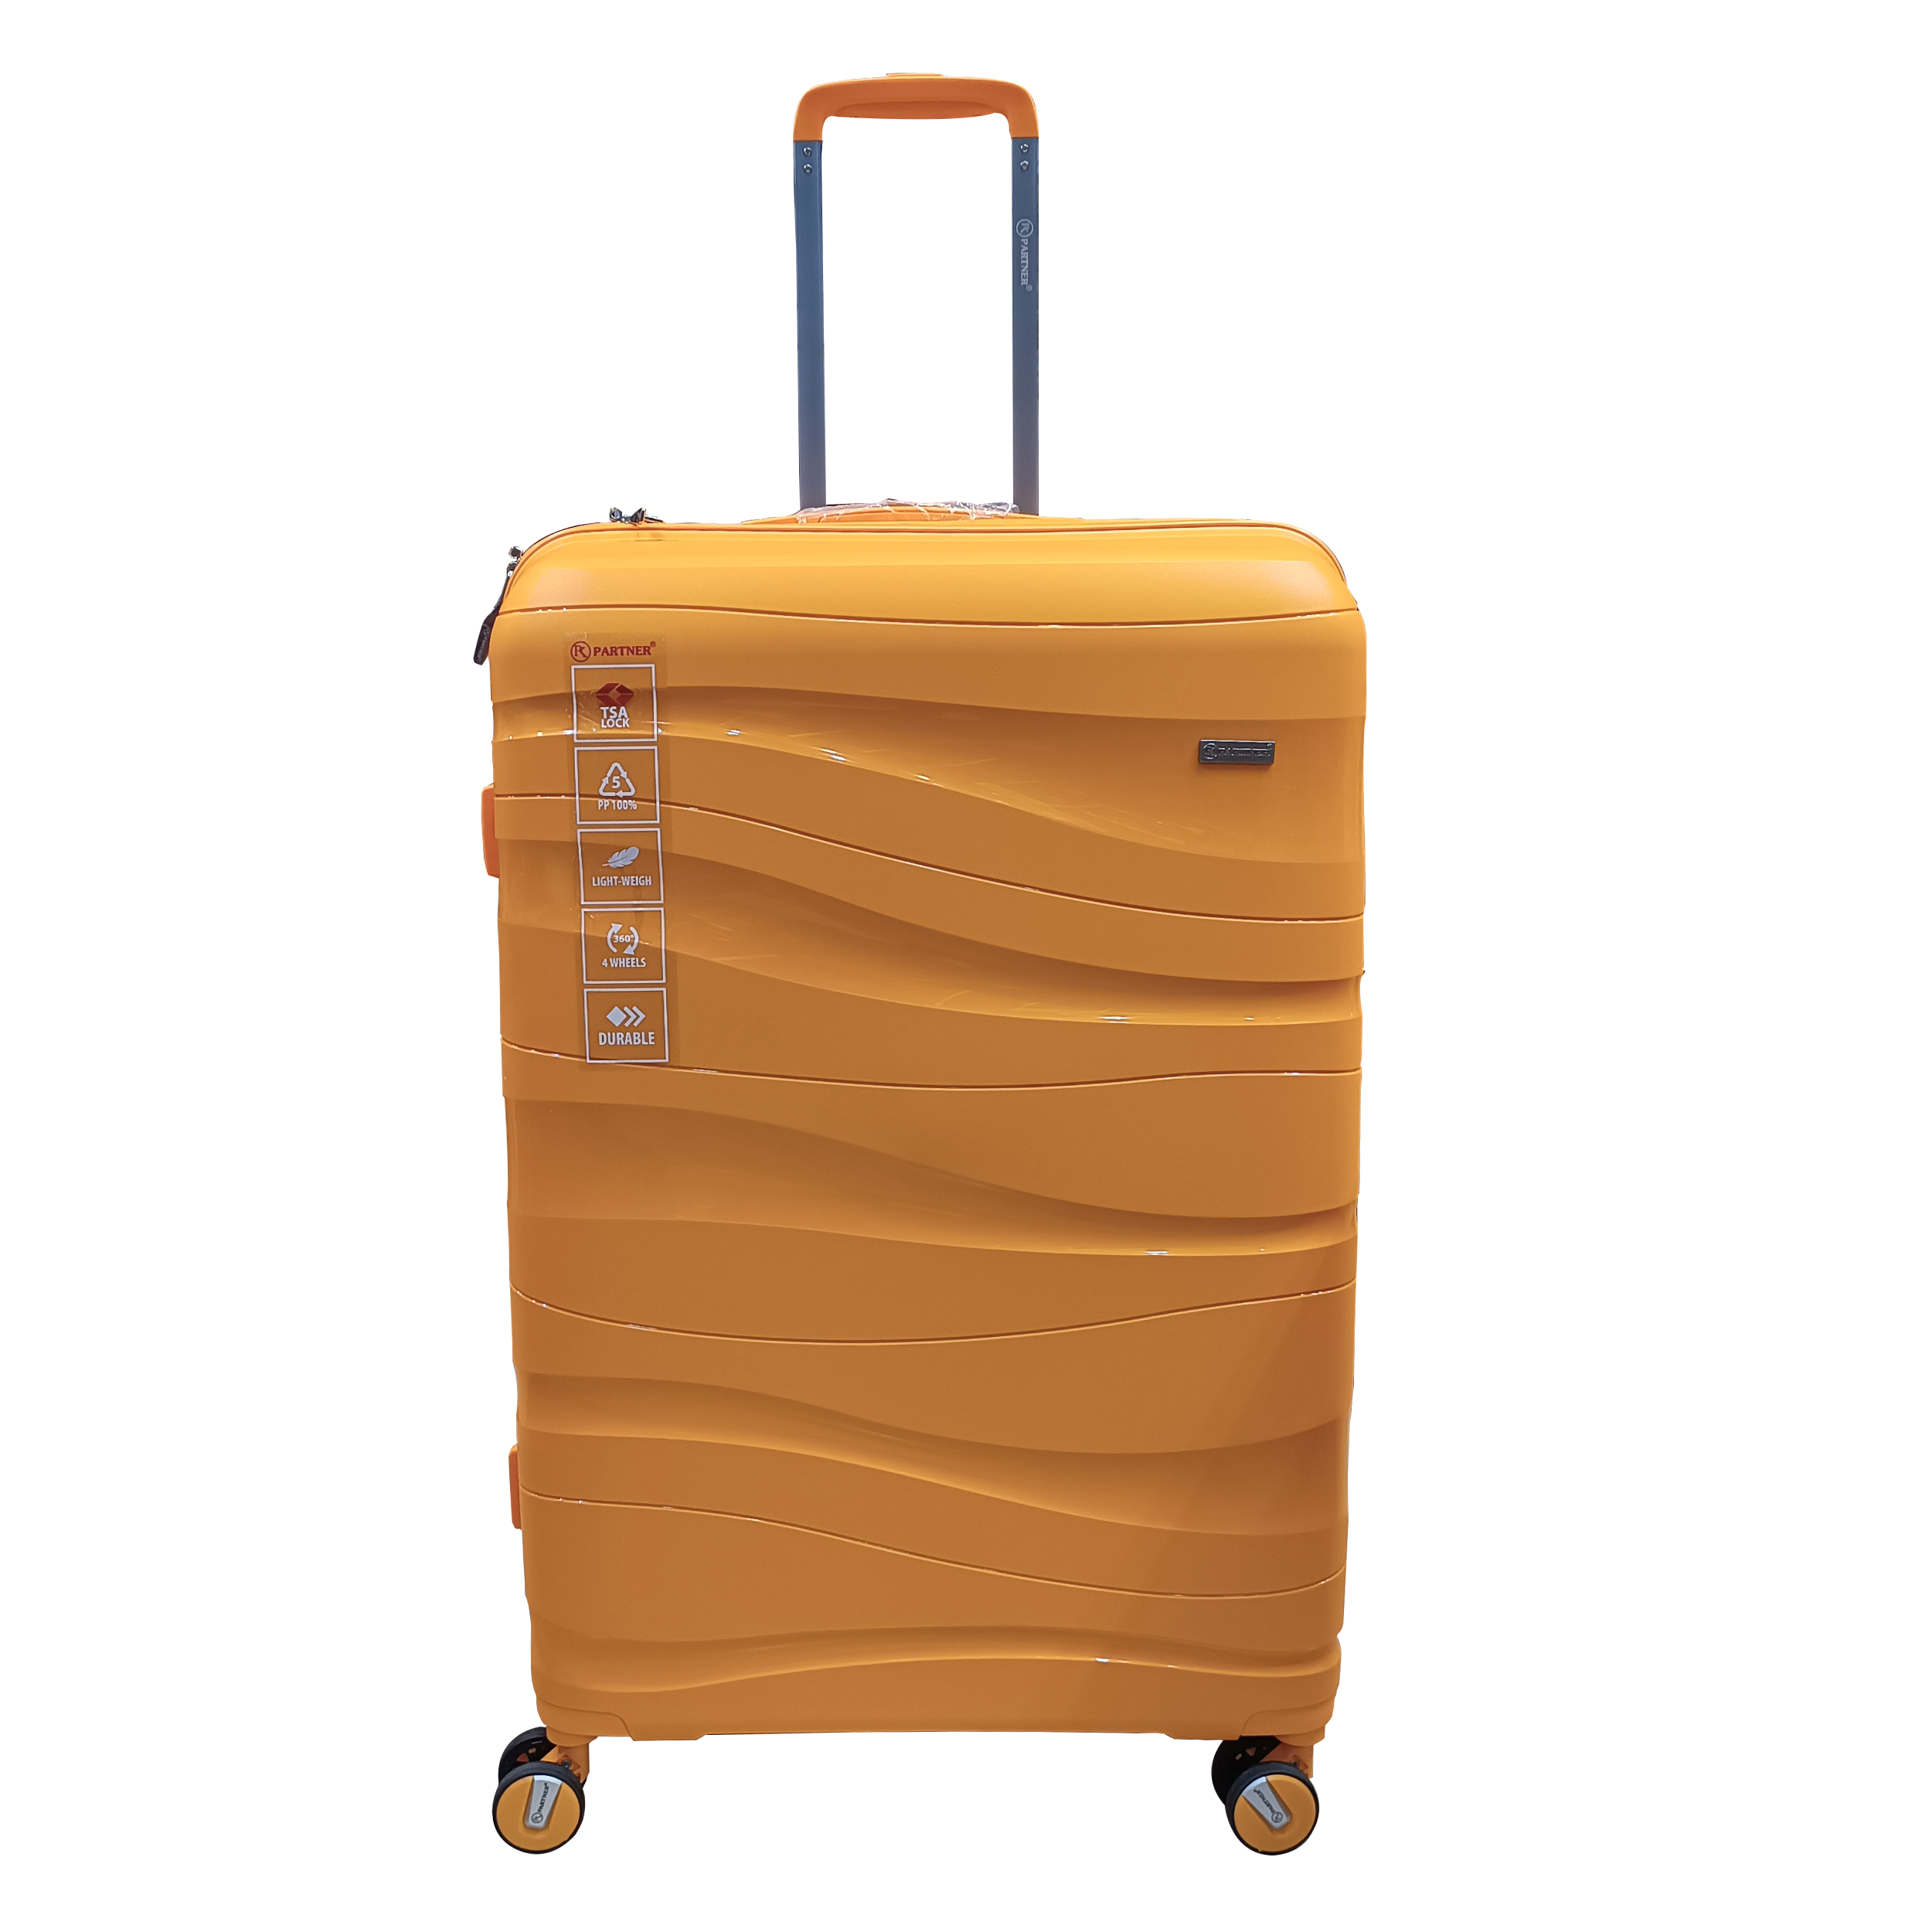 چمدان پارتنر مدل 01 سایز بزرگ